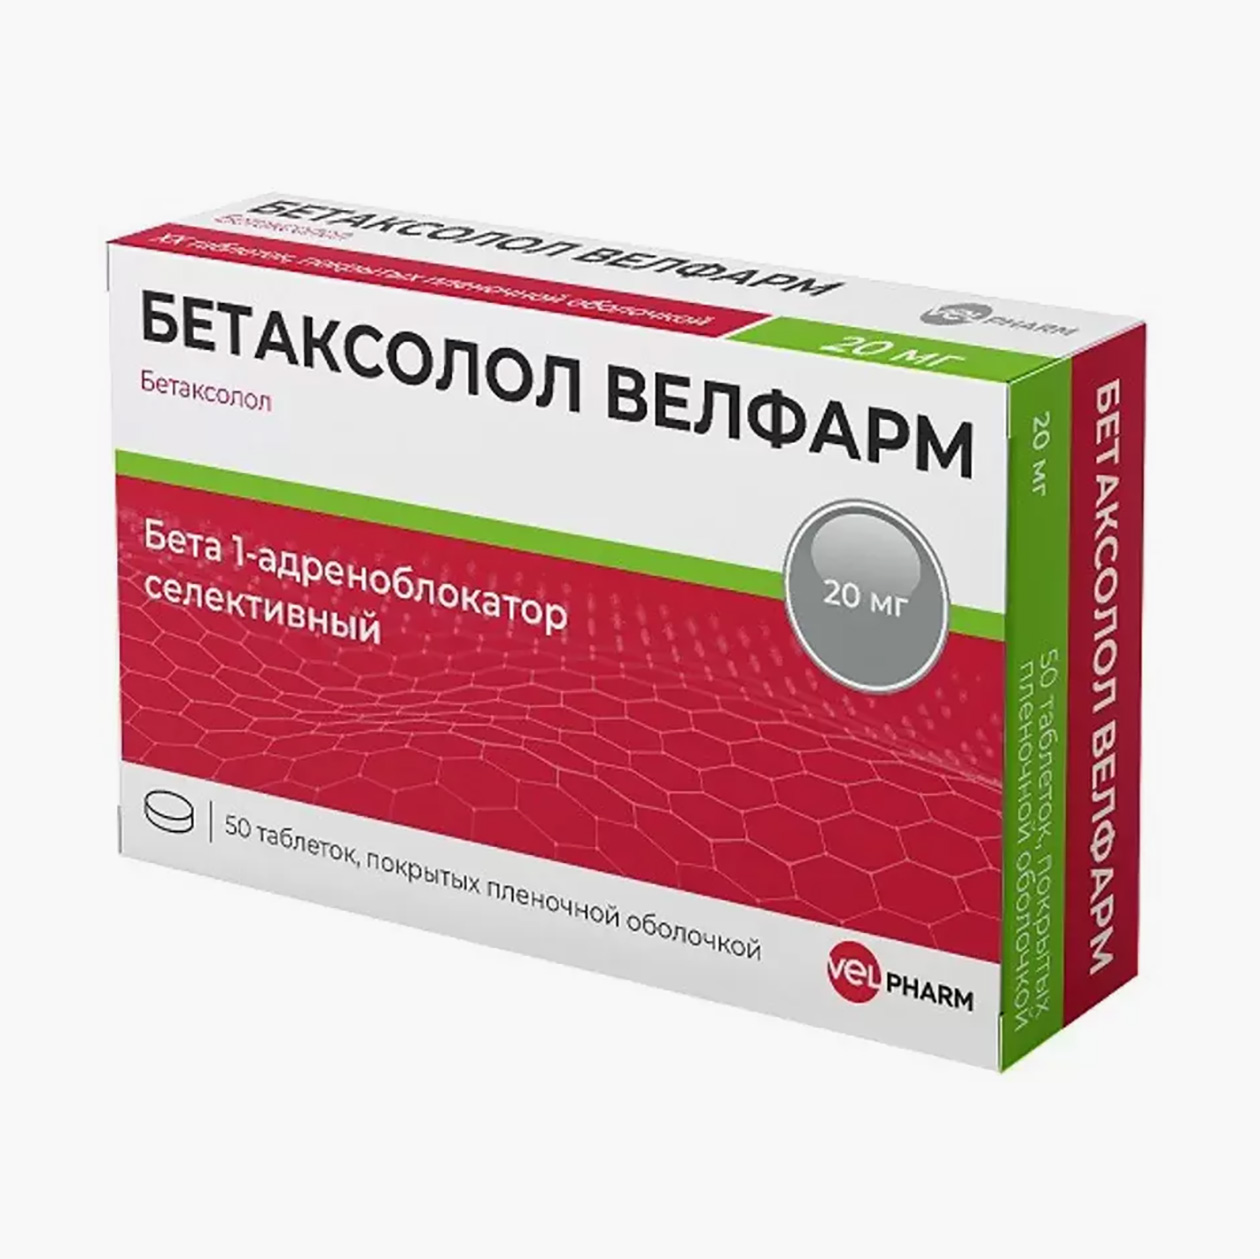 «Бетаксолол Велфарм», 20 мг. Аналог по действующему веществу стоит немного дешевле оригинала